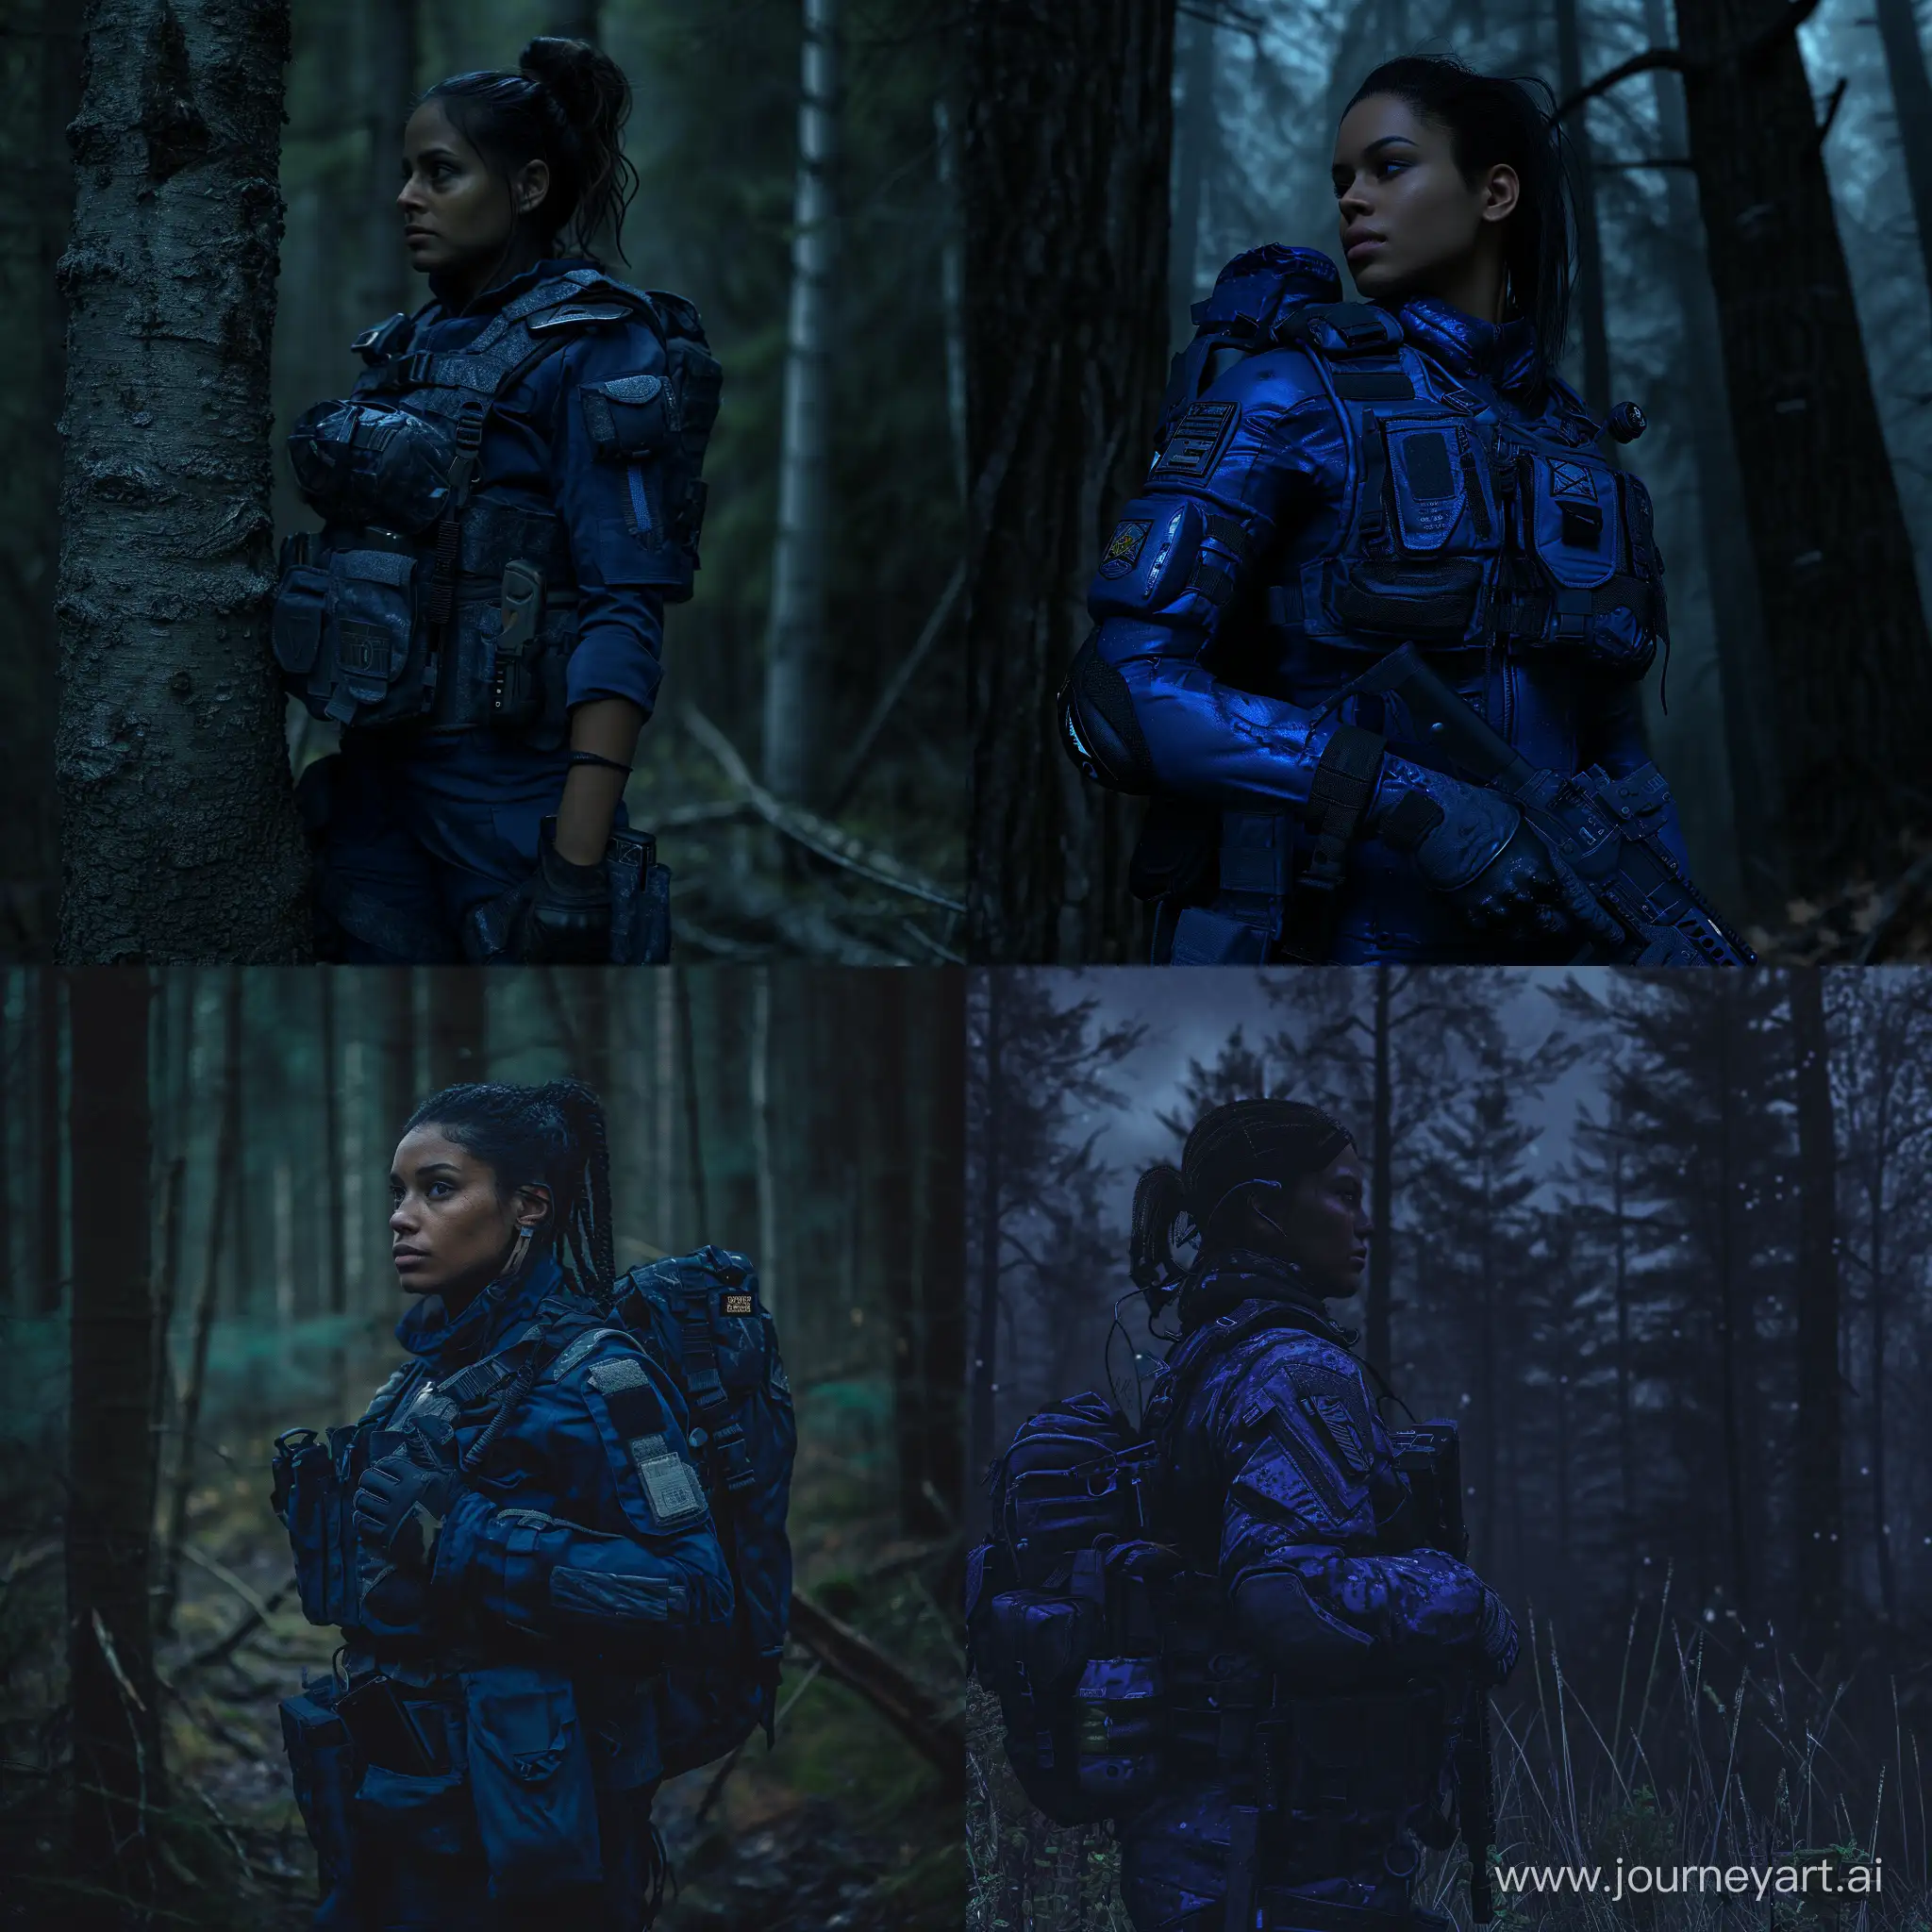 Sheva-Alomar-Dark-Skinned-Mercenary-in-STALKER-Amidst-Dead-Trees-in-a-Dark-Forest